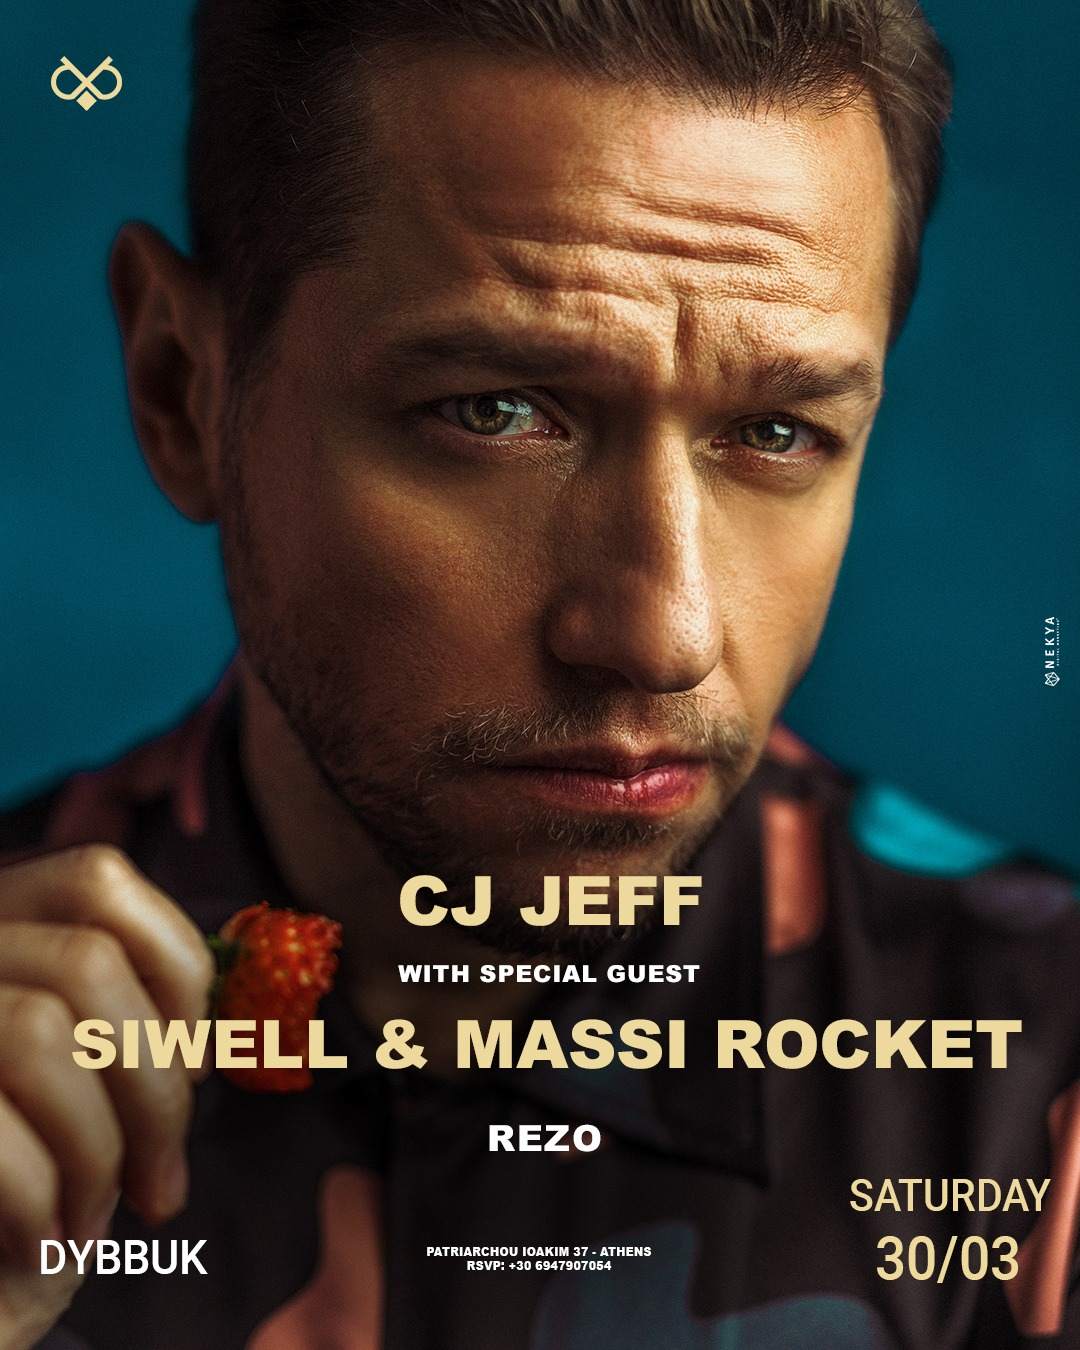 CJ JEFF + SIWELL + MASSI ROCKET - Página frontal